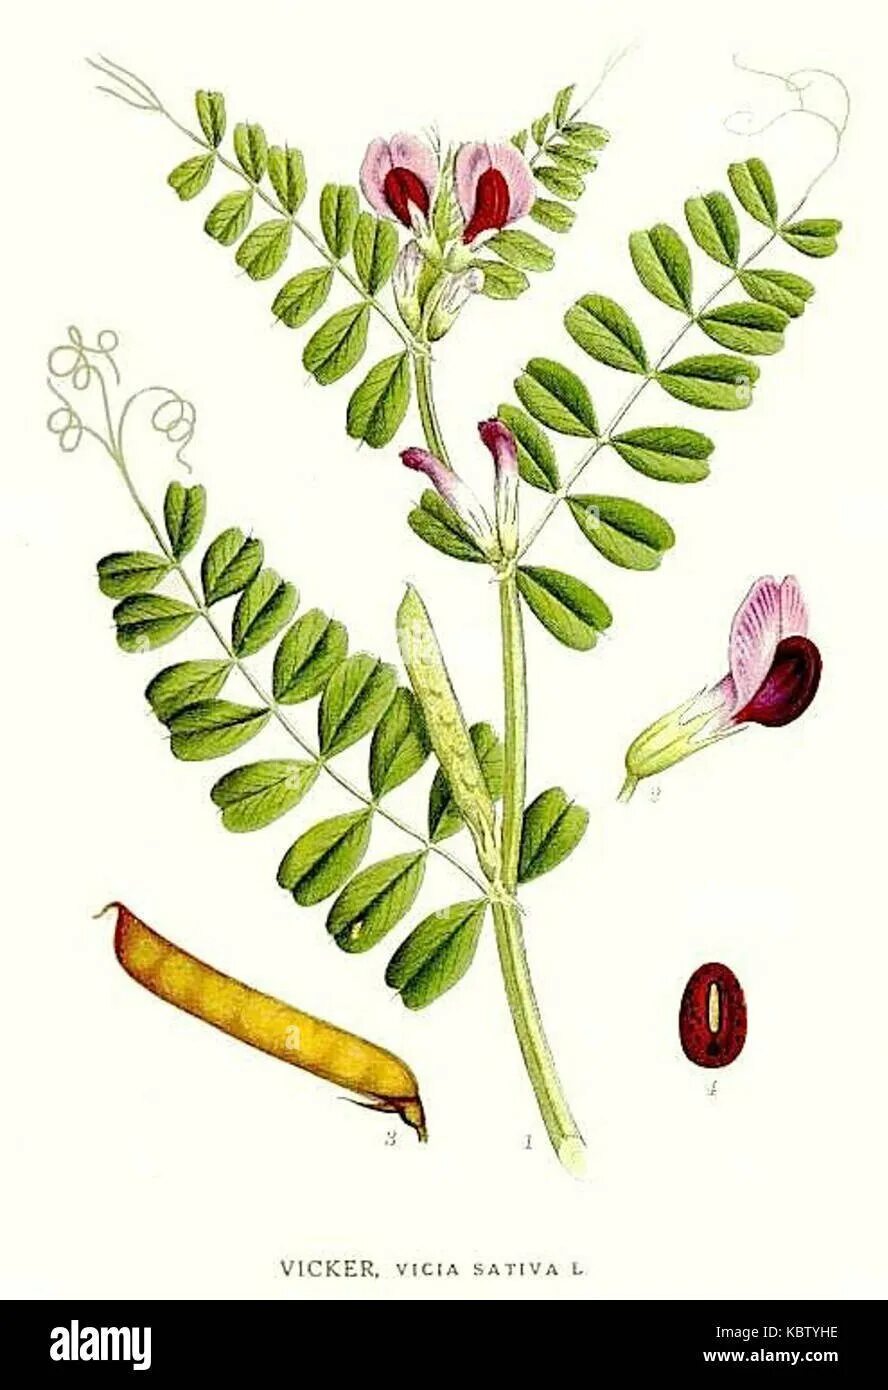 Триба это. Семена Вики мышиный горошек. Вика растение бобовых. Вика Яровая растение. Вика посевная (Vicia Sativa l.)семя.